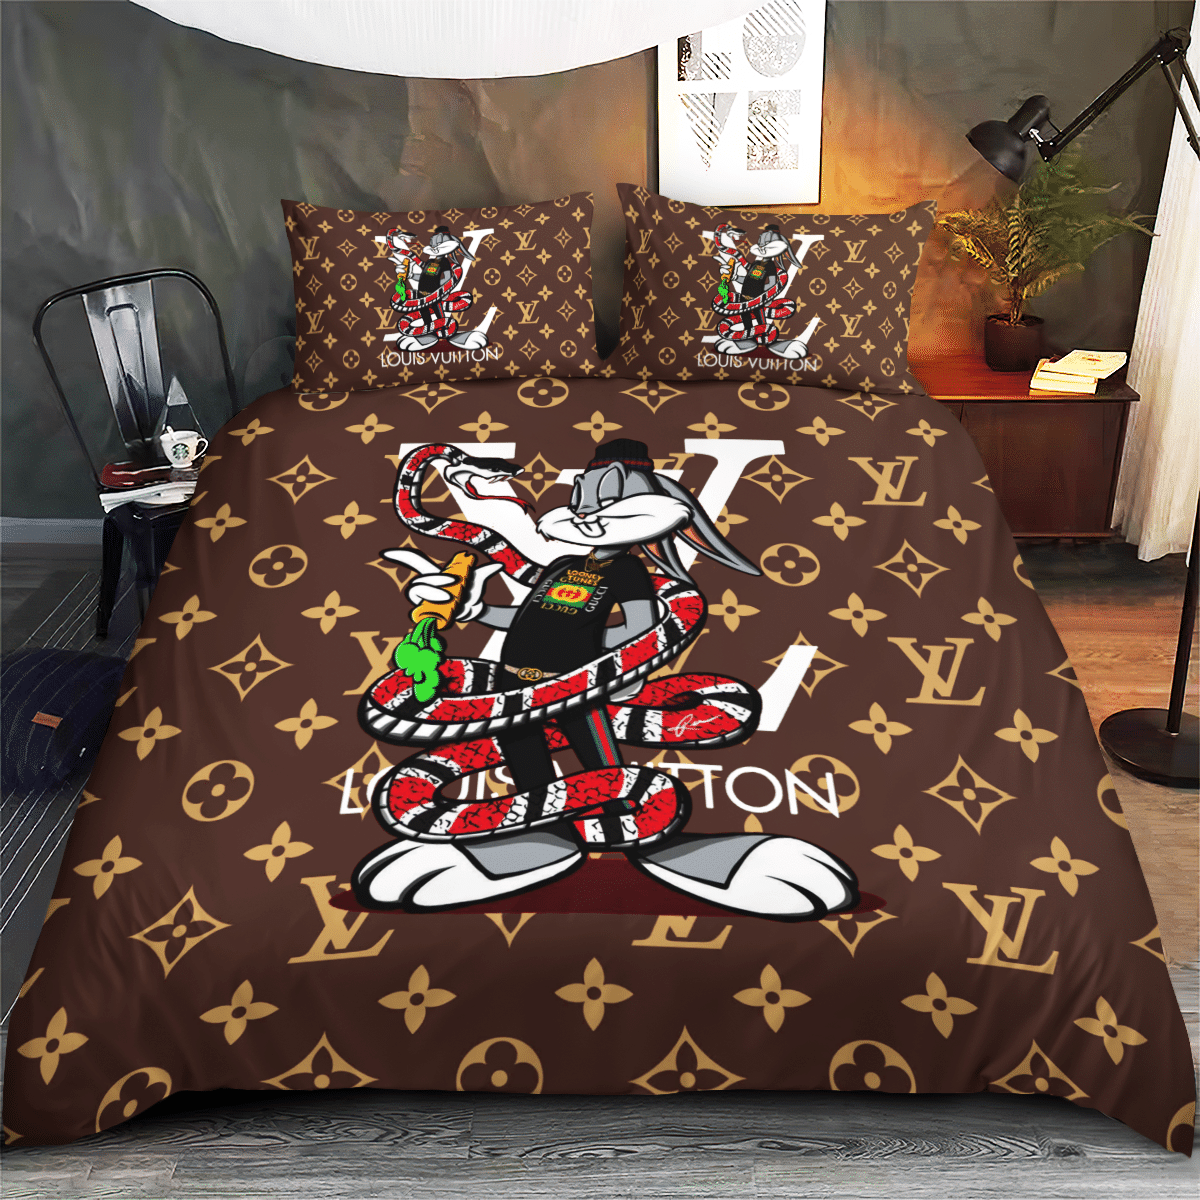 Louis Vuitton Bugs Bunny bedding set